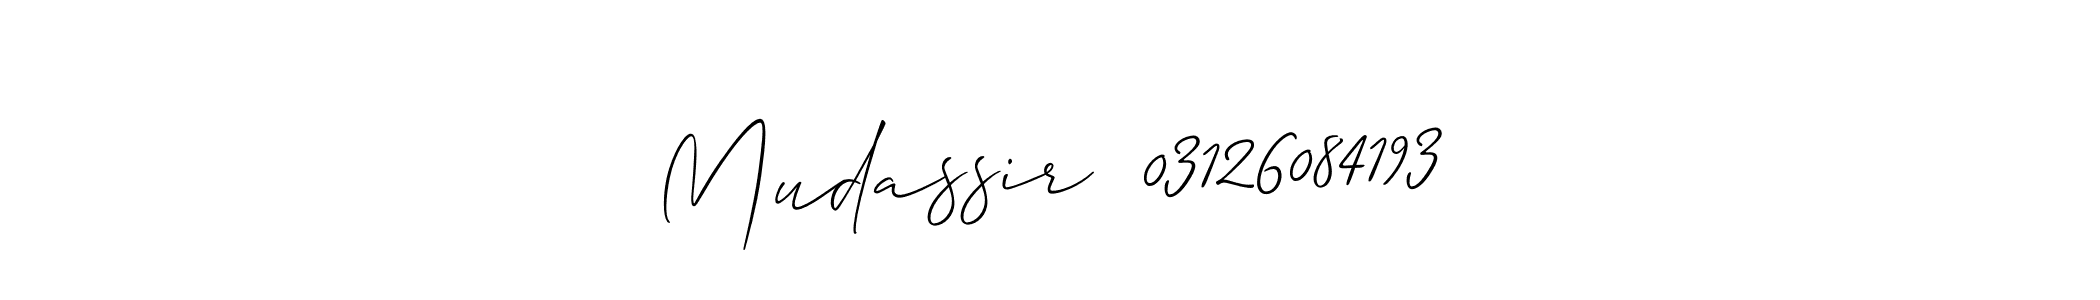 Mudassir  03126084193 stylish signature style. Best Handwritten Sign (Allison_Script) for my name. Handwritten Signature Collection Ideas for my name Mudassir  03126084193. Mudassir  03126084193 signature style 2 images and pictures png